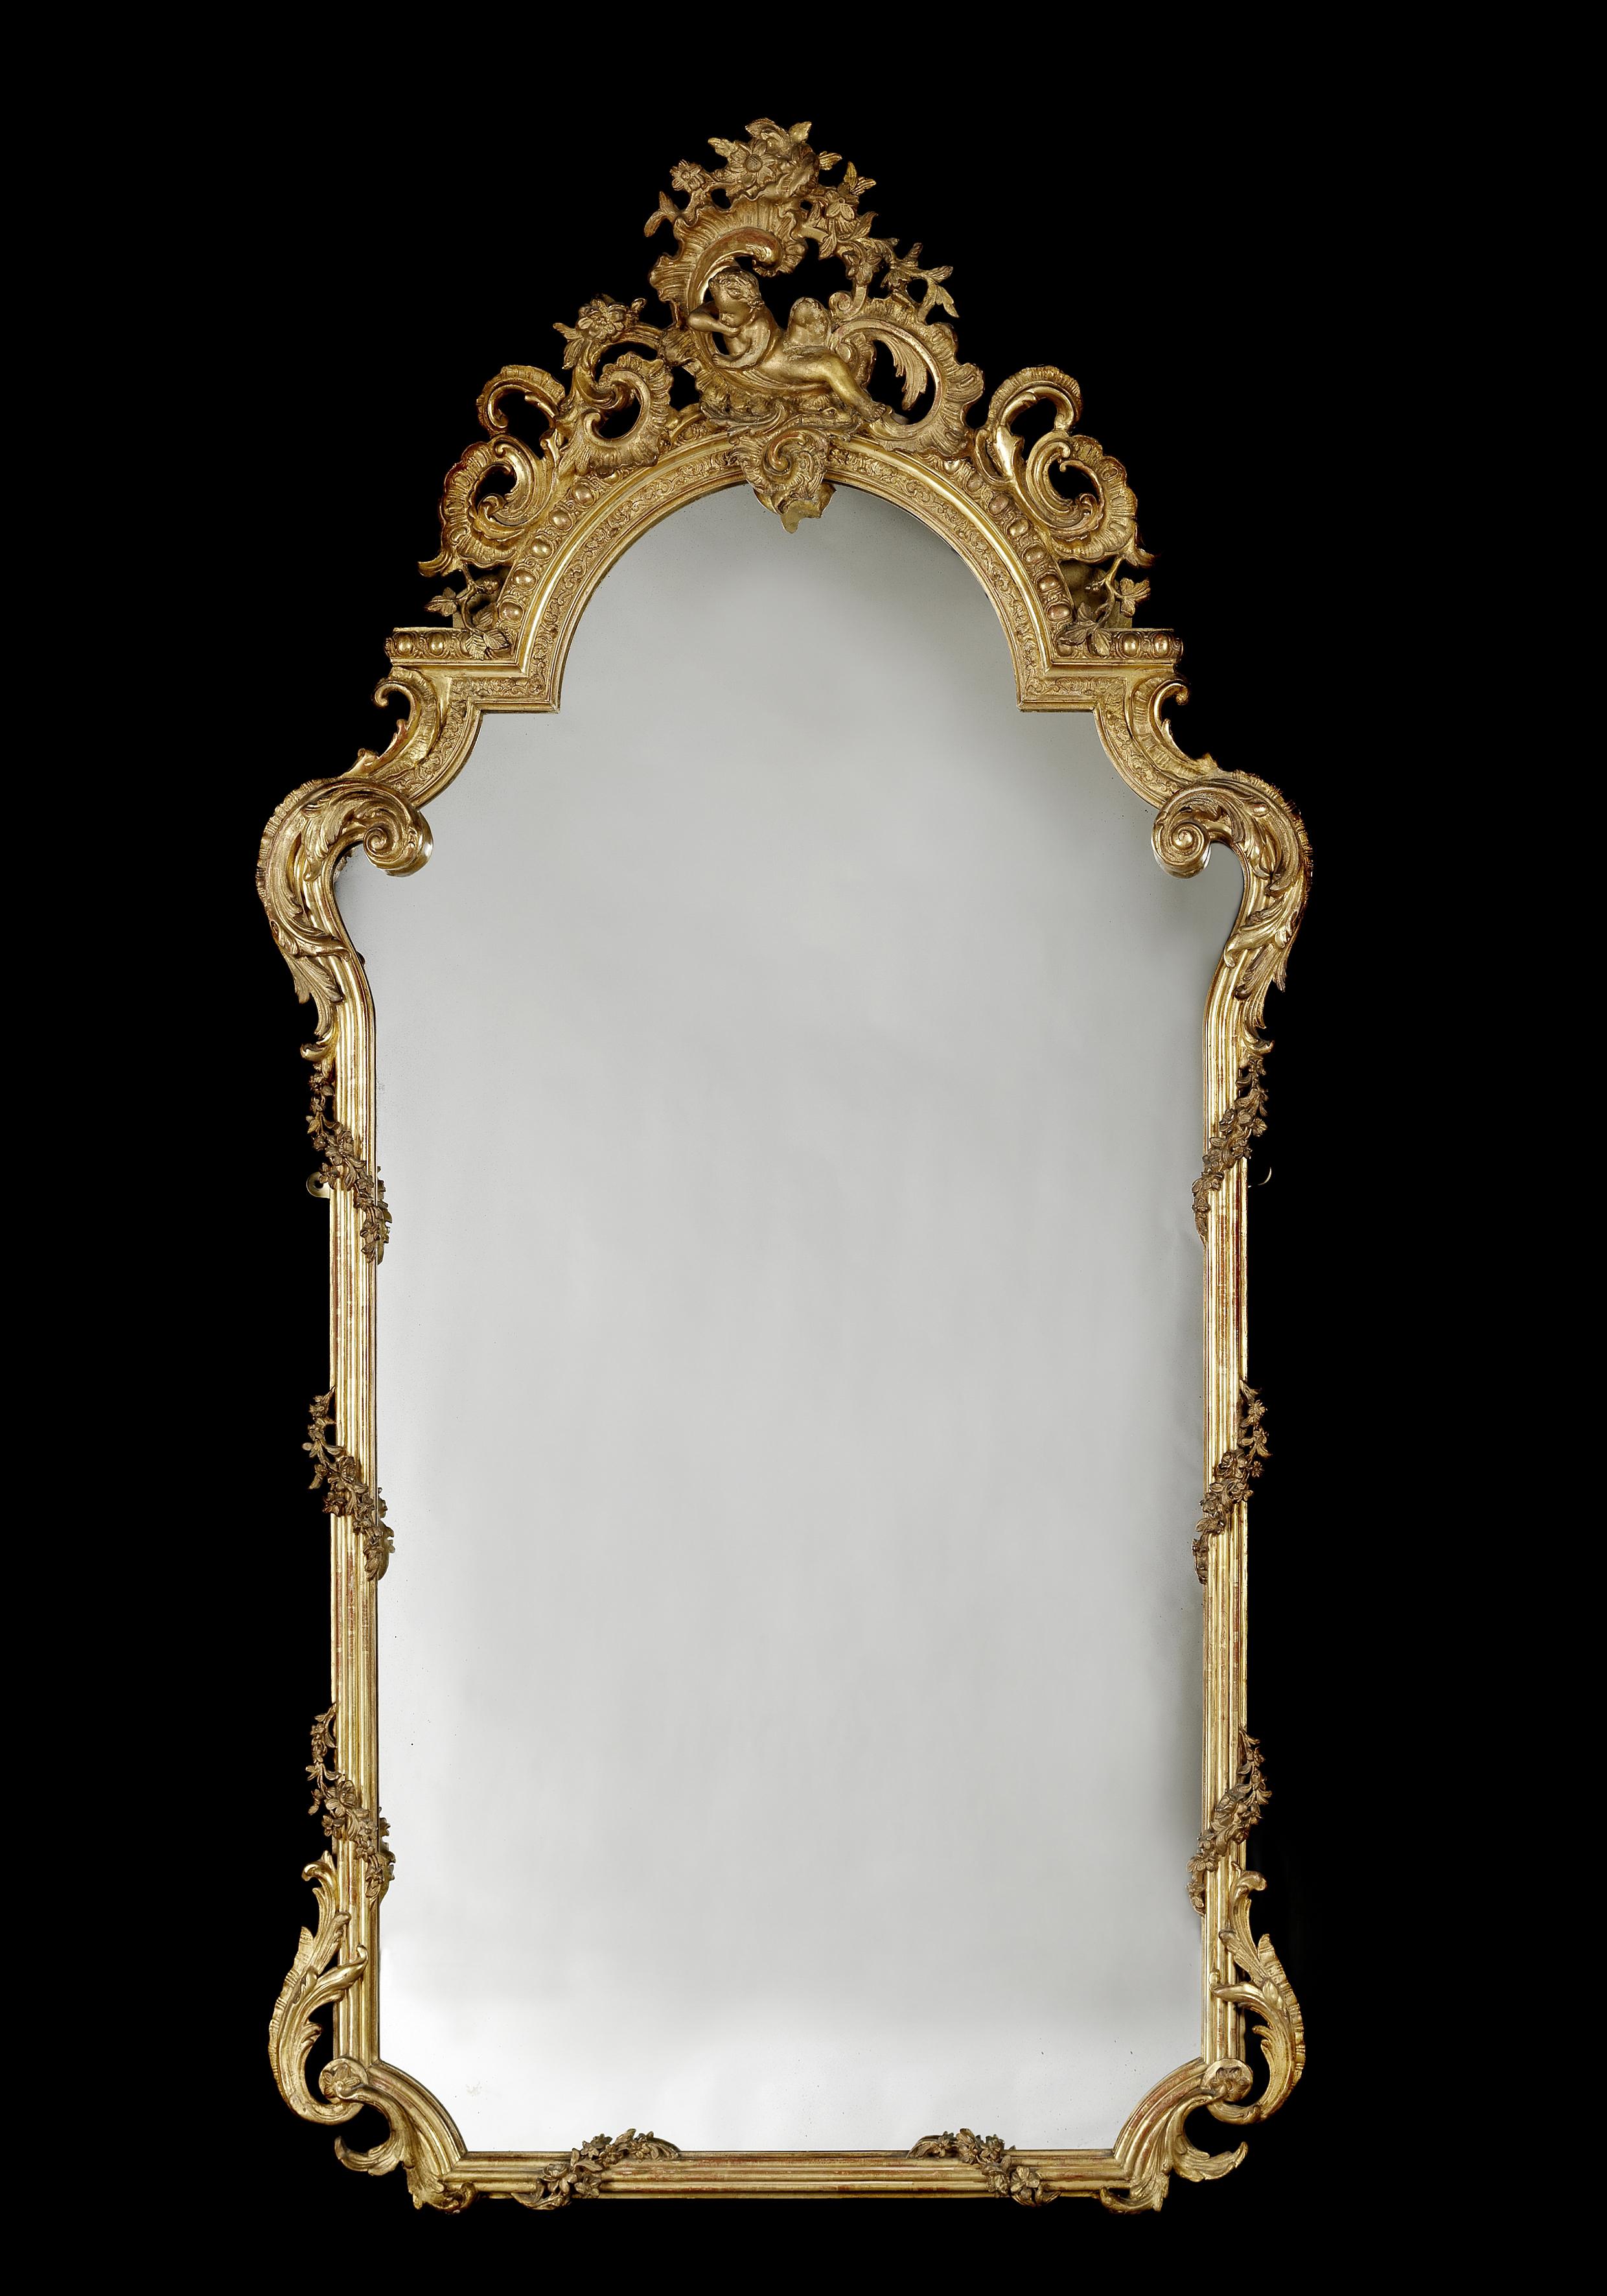 Ein feiner und hoher Spiegel aus geschnitztem Goldholz im Louis XV-Stil. 

Frankreich, um 1870.

Dieser sehr fein geschnitzte Spiegel hat einen gewölbten Aufsatz, der ausdrucksvoll mit Akanthus-C-Rollen und Zistrosen geschnitzt ist und in dessen